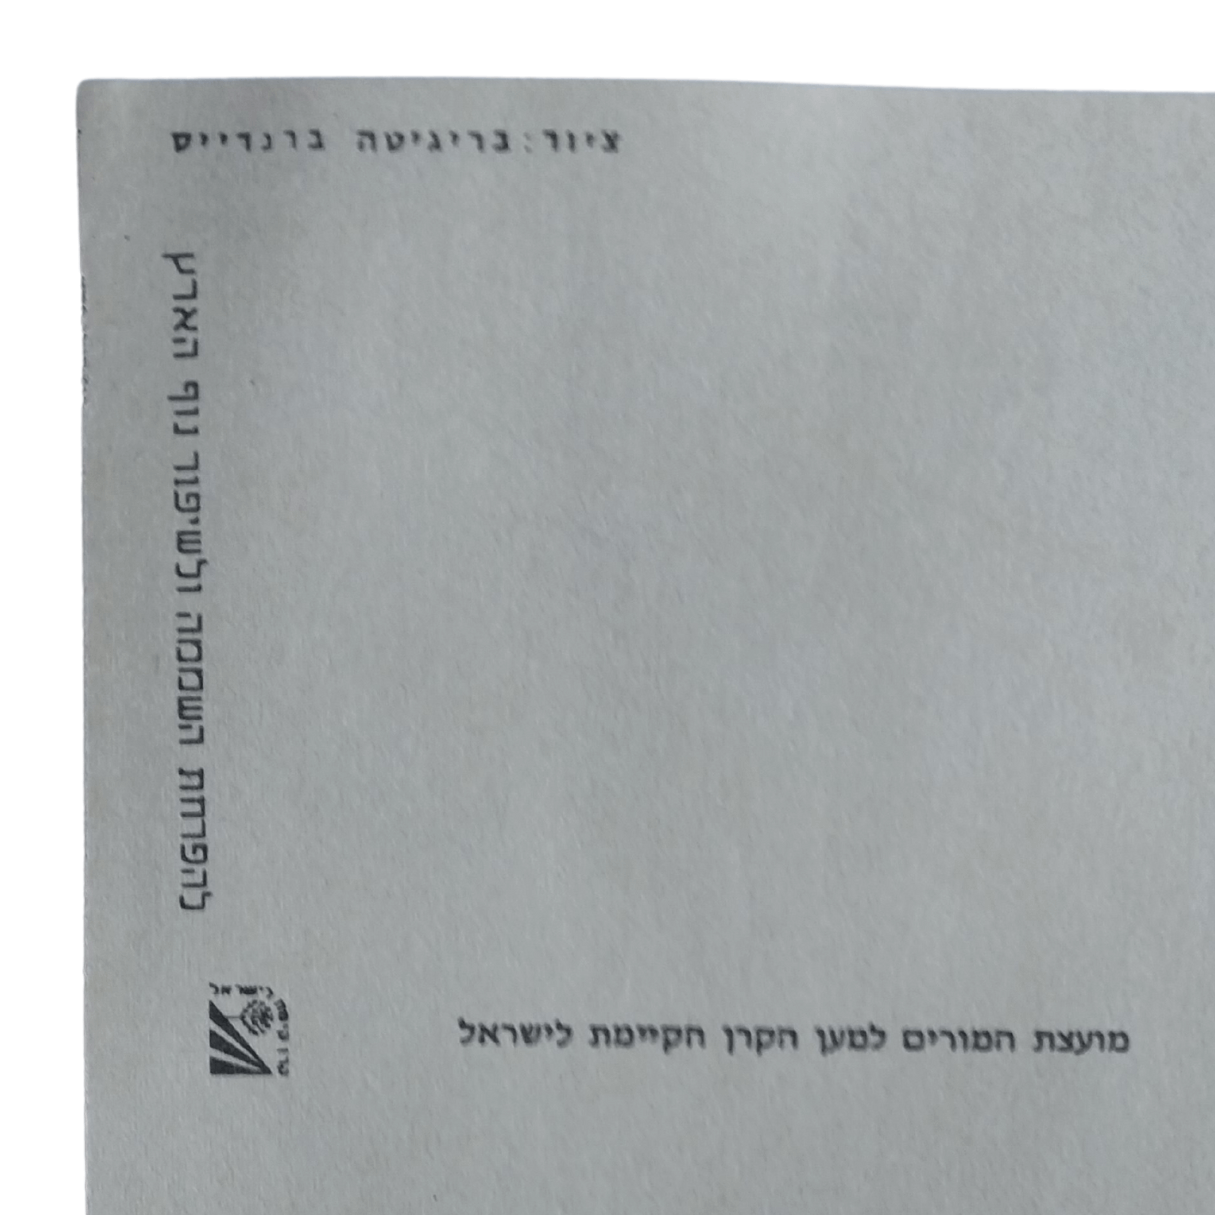 Cartão Postal Antigo Rosh Hashanah anos 1970